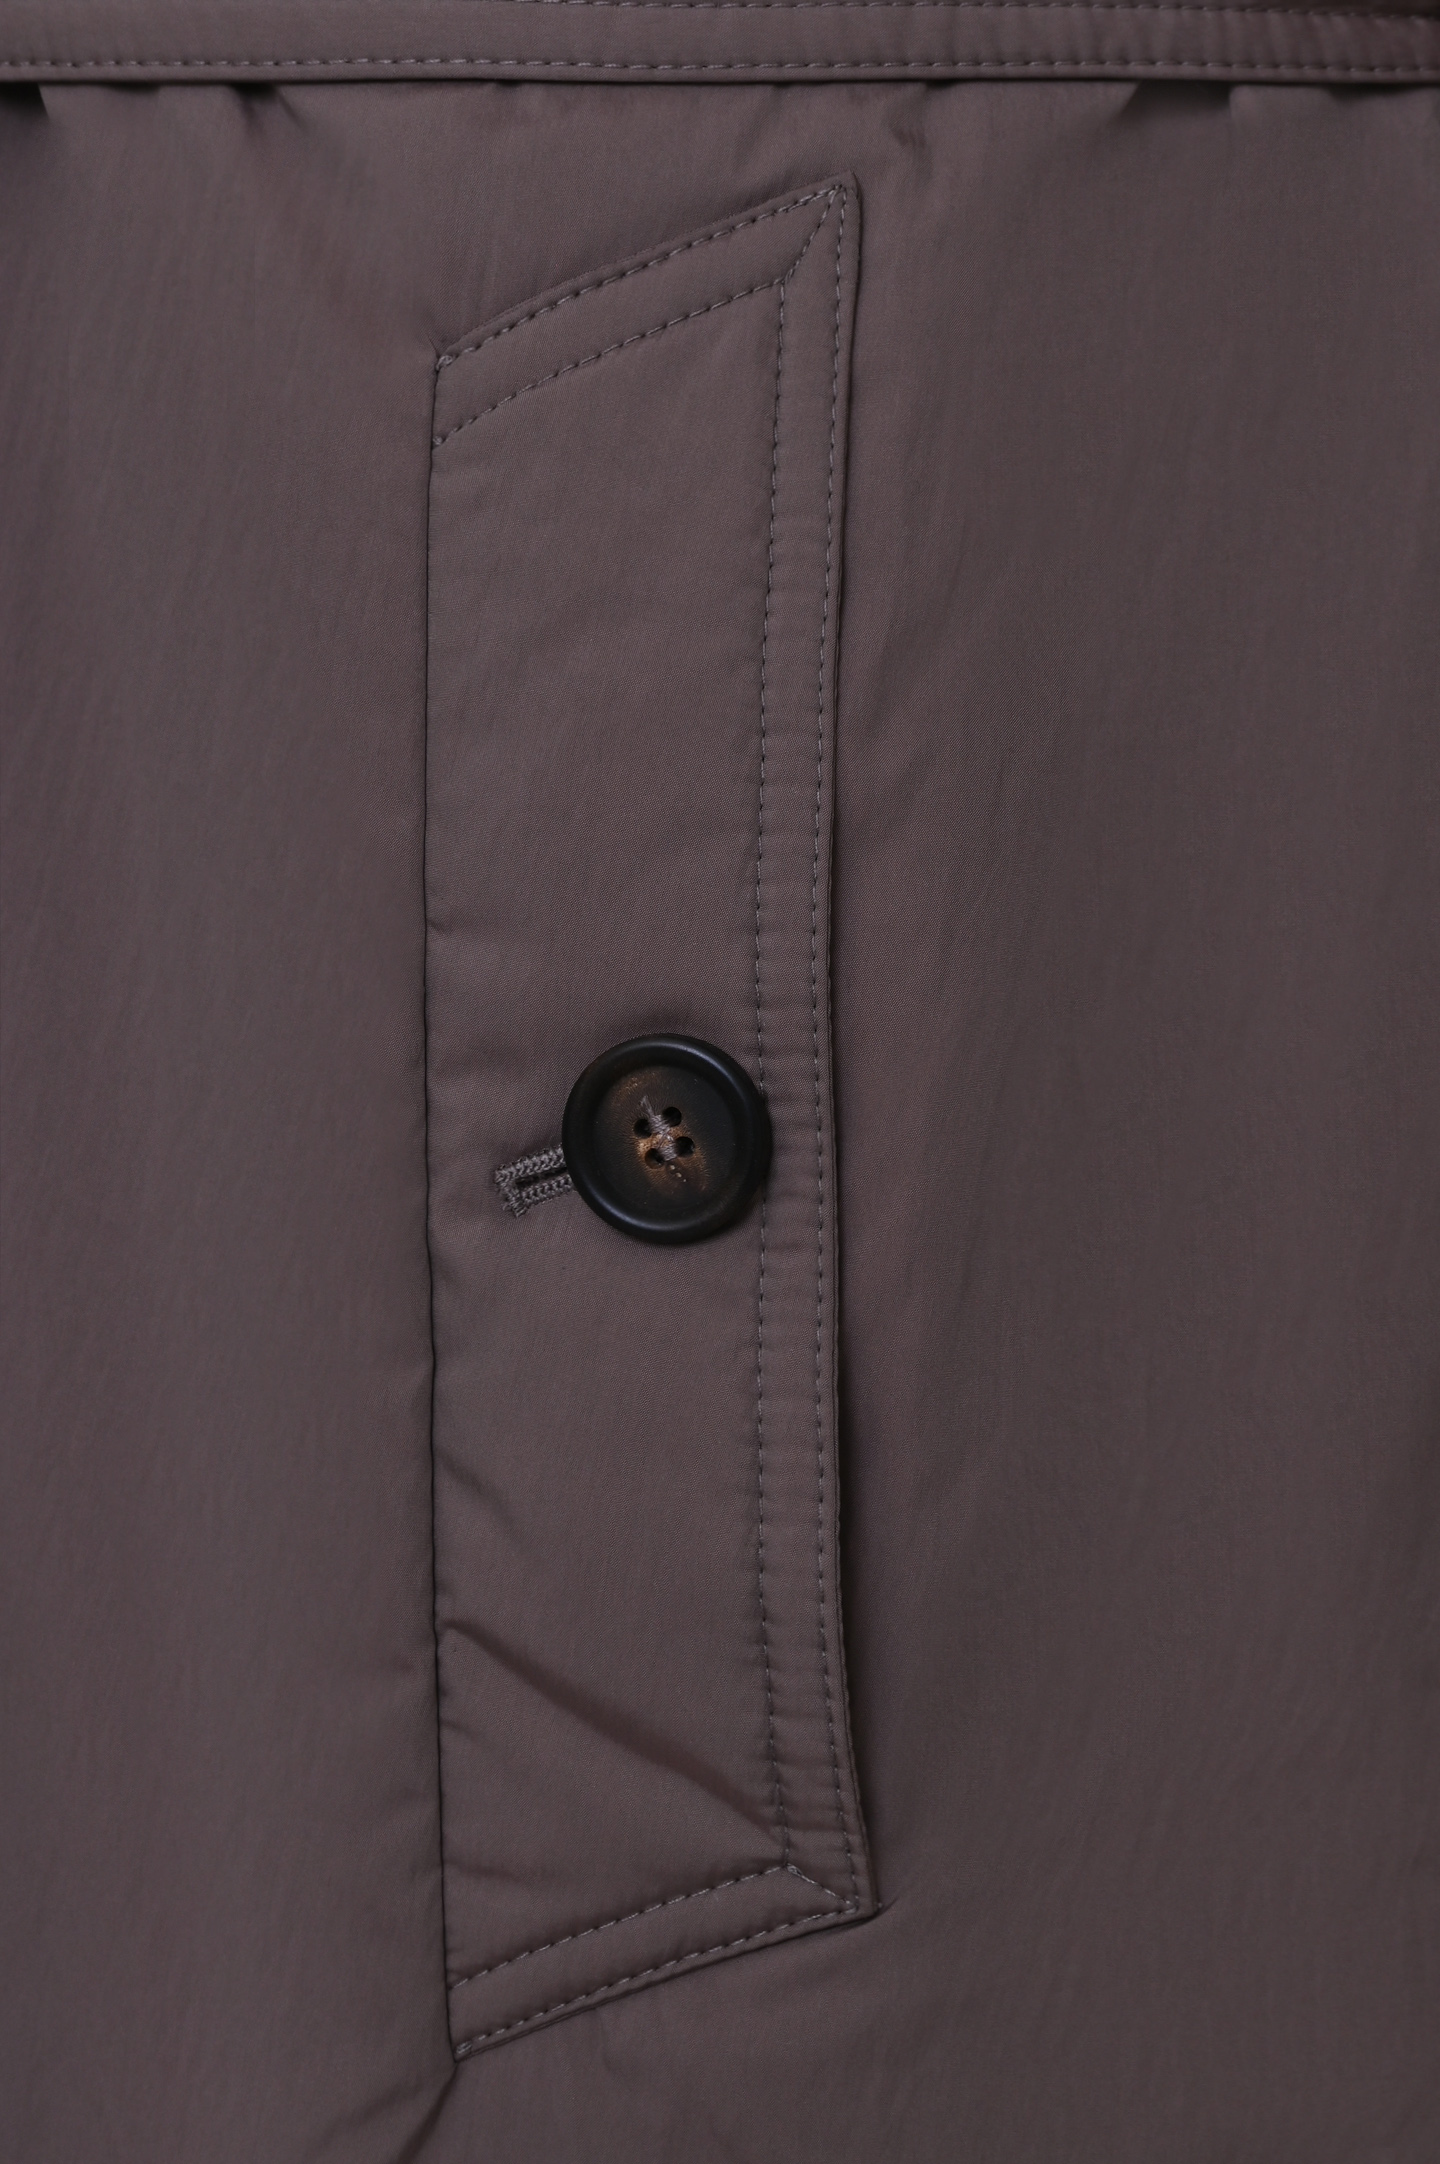 Куртка BRUNELLO  CUCINELLI MB5719493P, цвет: Разноцветный, Женский